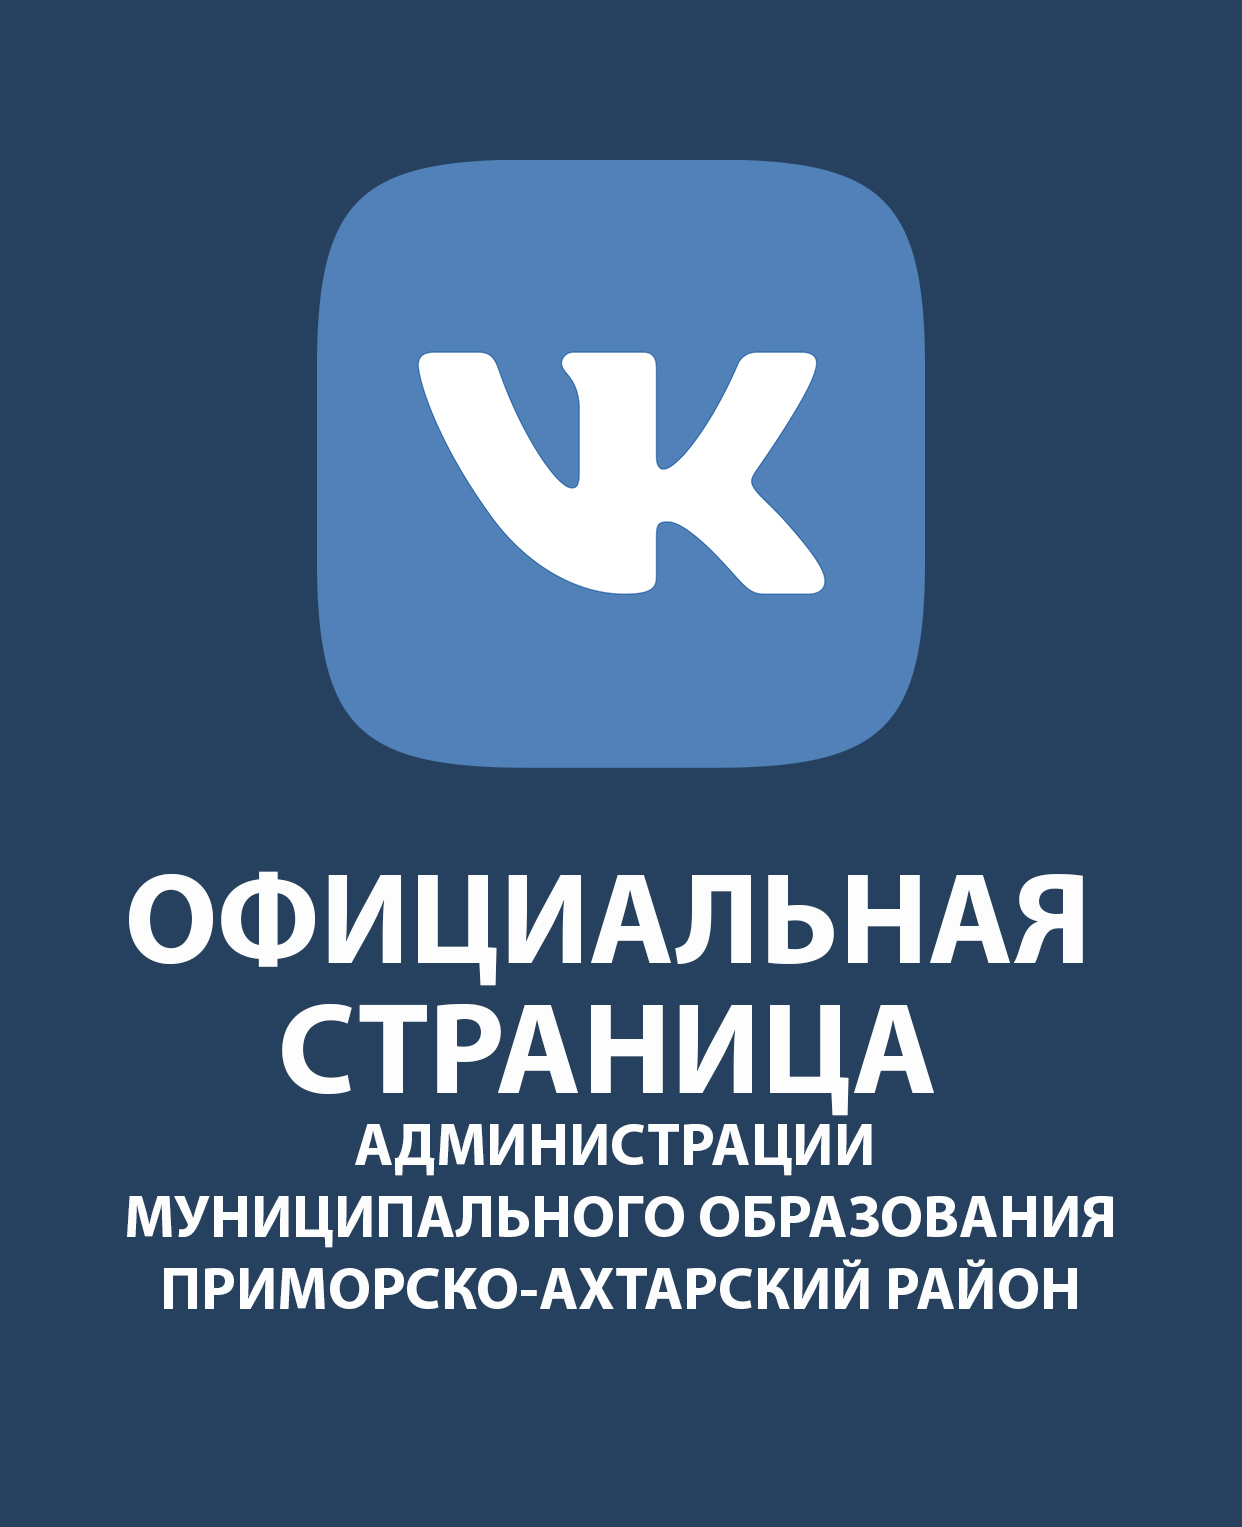 Официальная страница Вконтакте